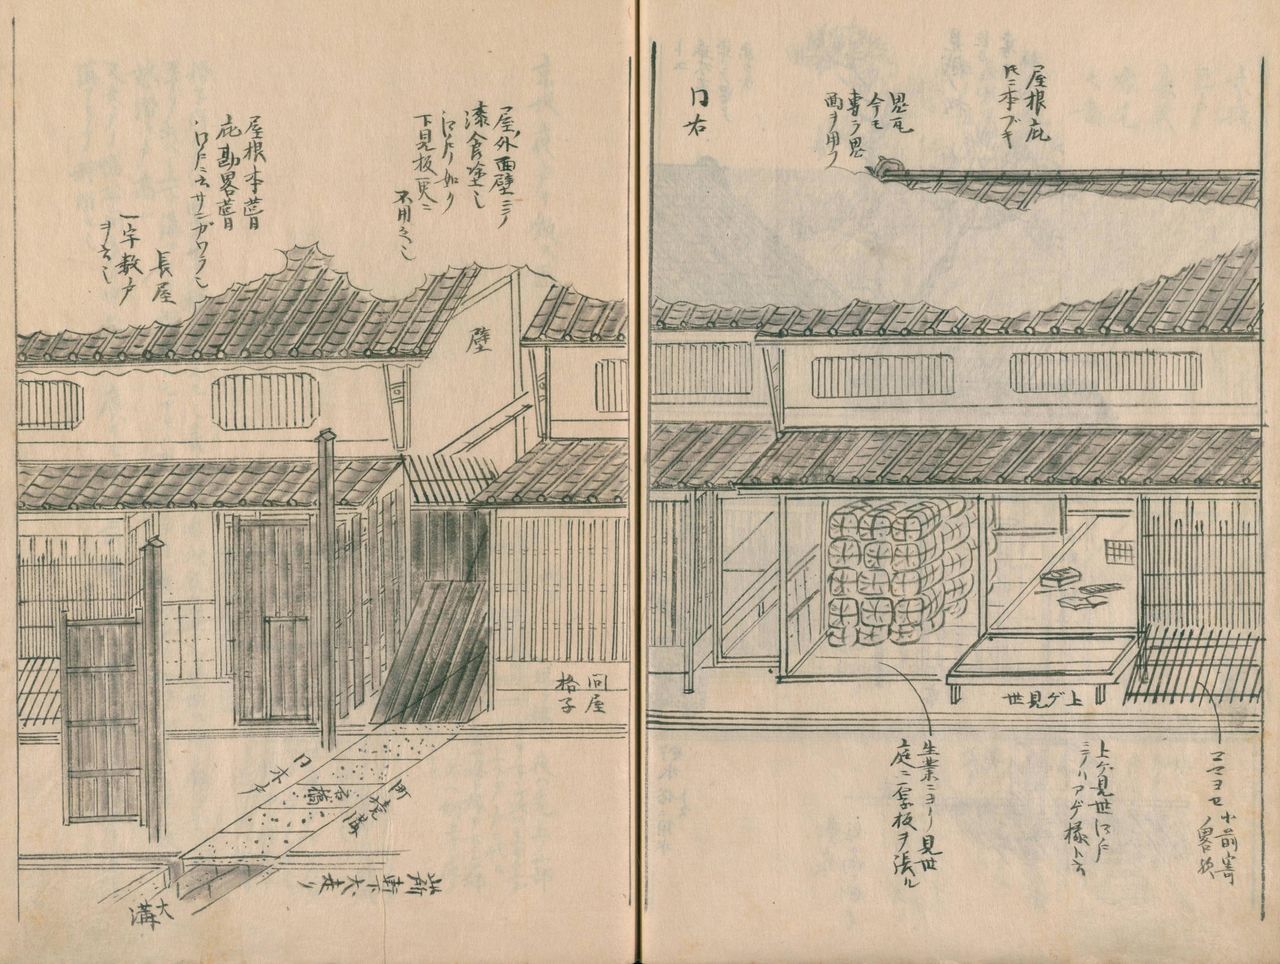 《京坂巨户豪之家宅图①》堆放秸秆包的地方是京都商店的陈列架，称为“上见世”。从室町时代起，上见世就一直是京都商店的一大特色。左边有木门，穿过木门就是长屋。